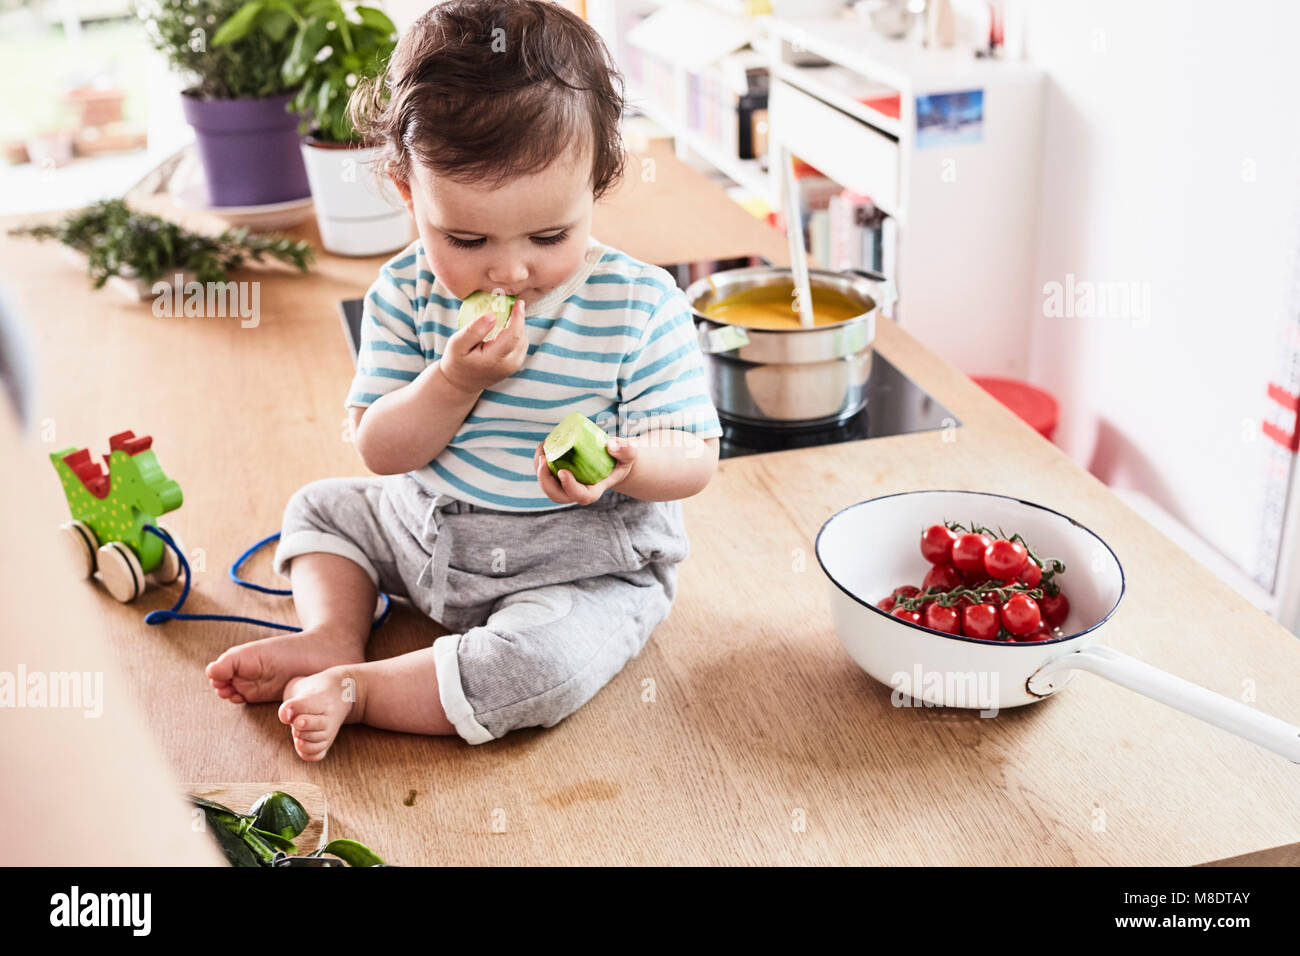 Baby ragazza seduta sul banco di cucina, mangiare cetriolo Foto Stock